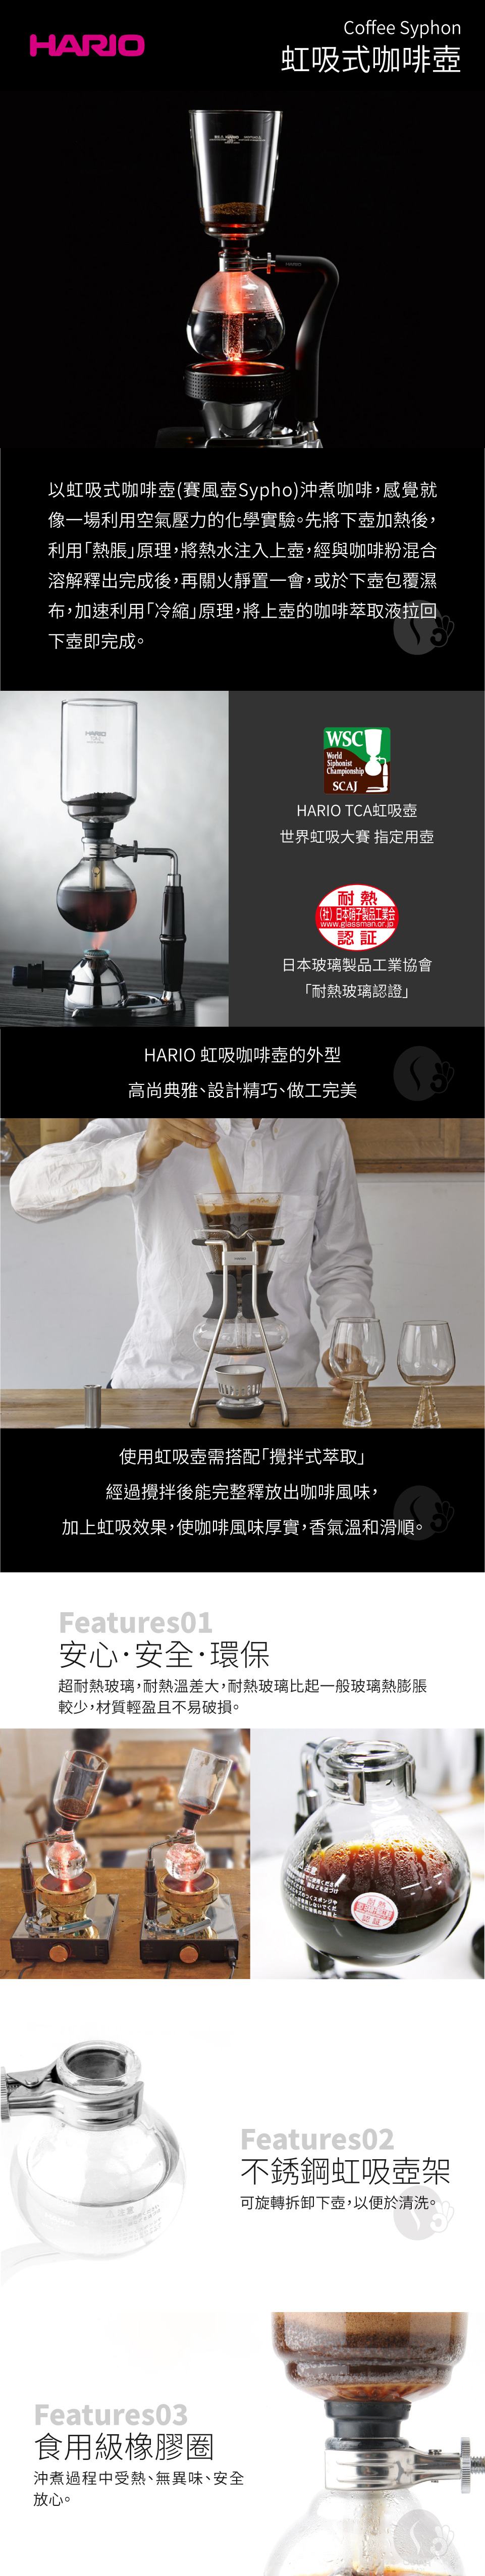 HARIO 50A-3 EX虹吸式咖啡組